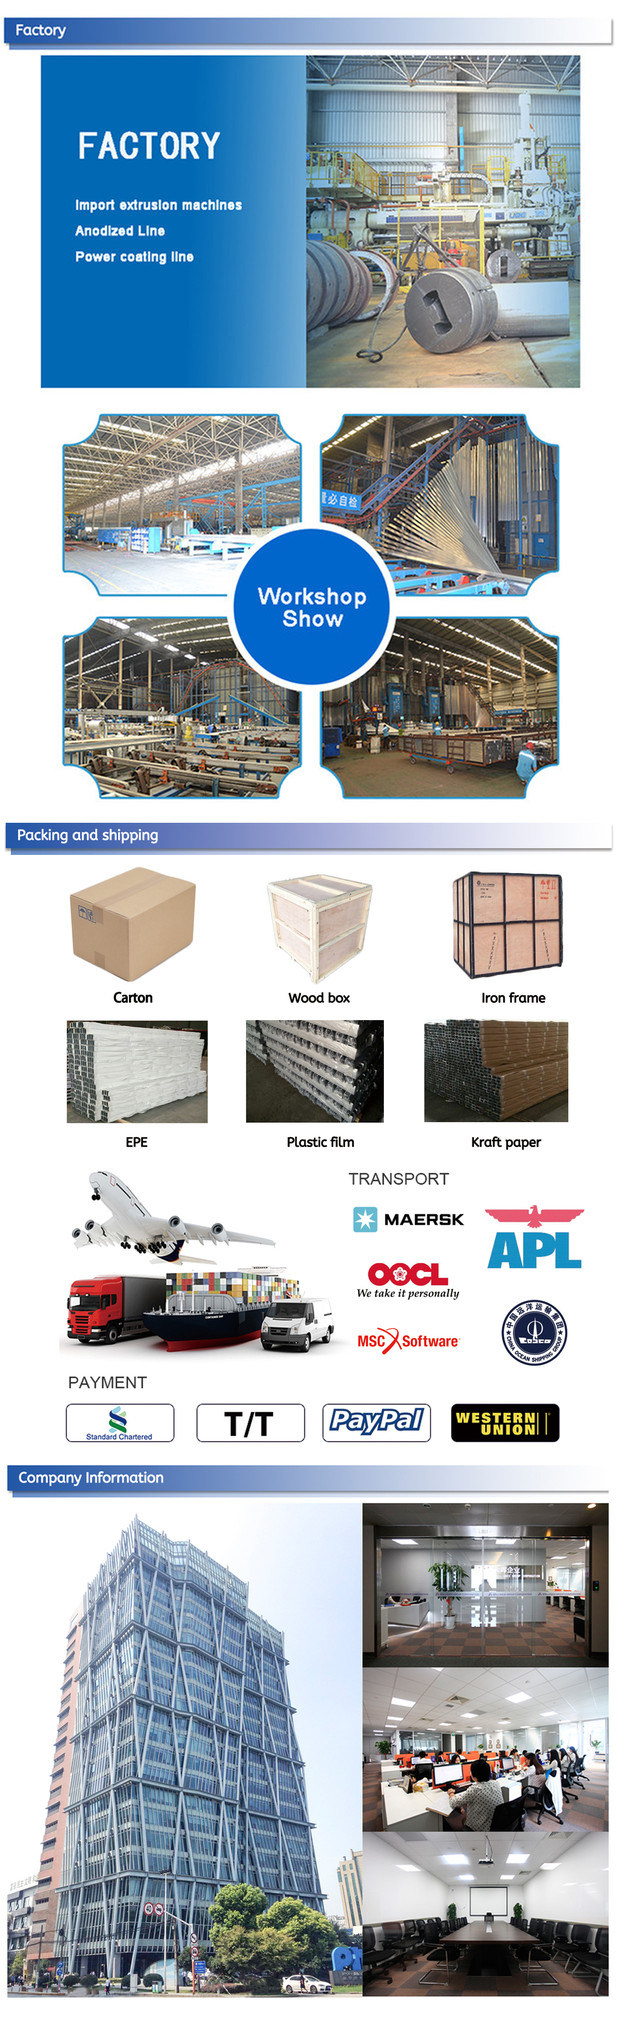 Aluminum Heavy Duty Shipping Aluminium Pallet for Warehouse Rack System